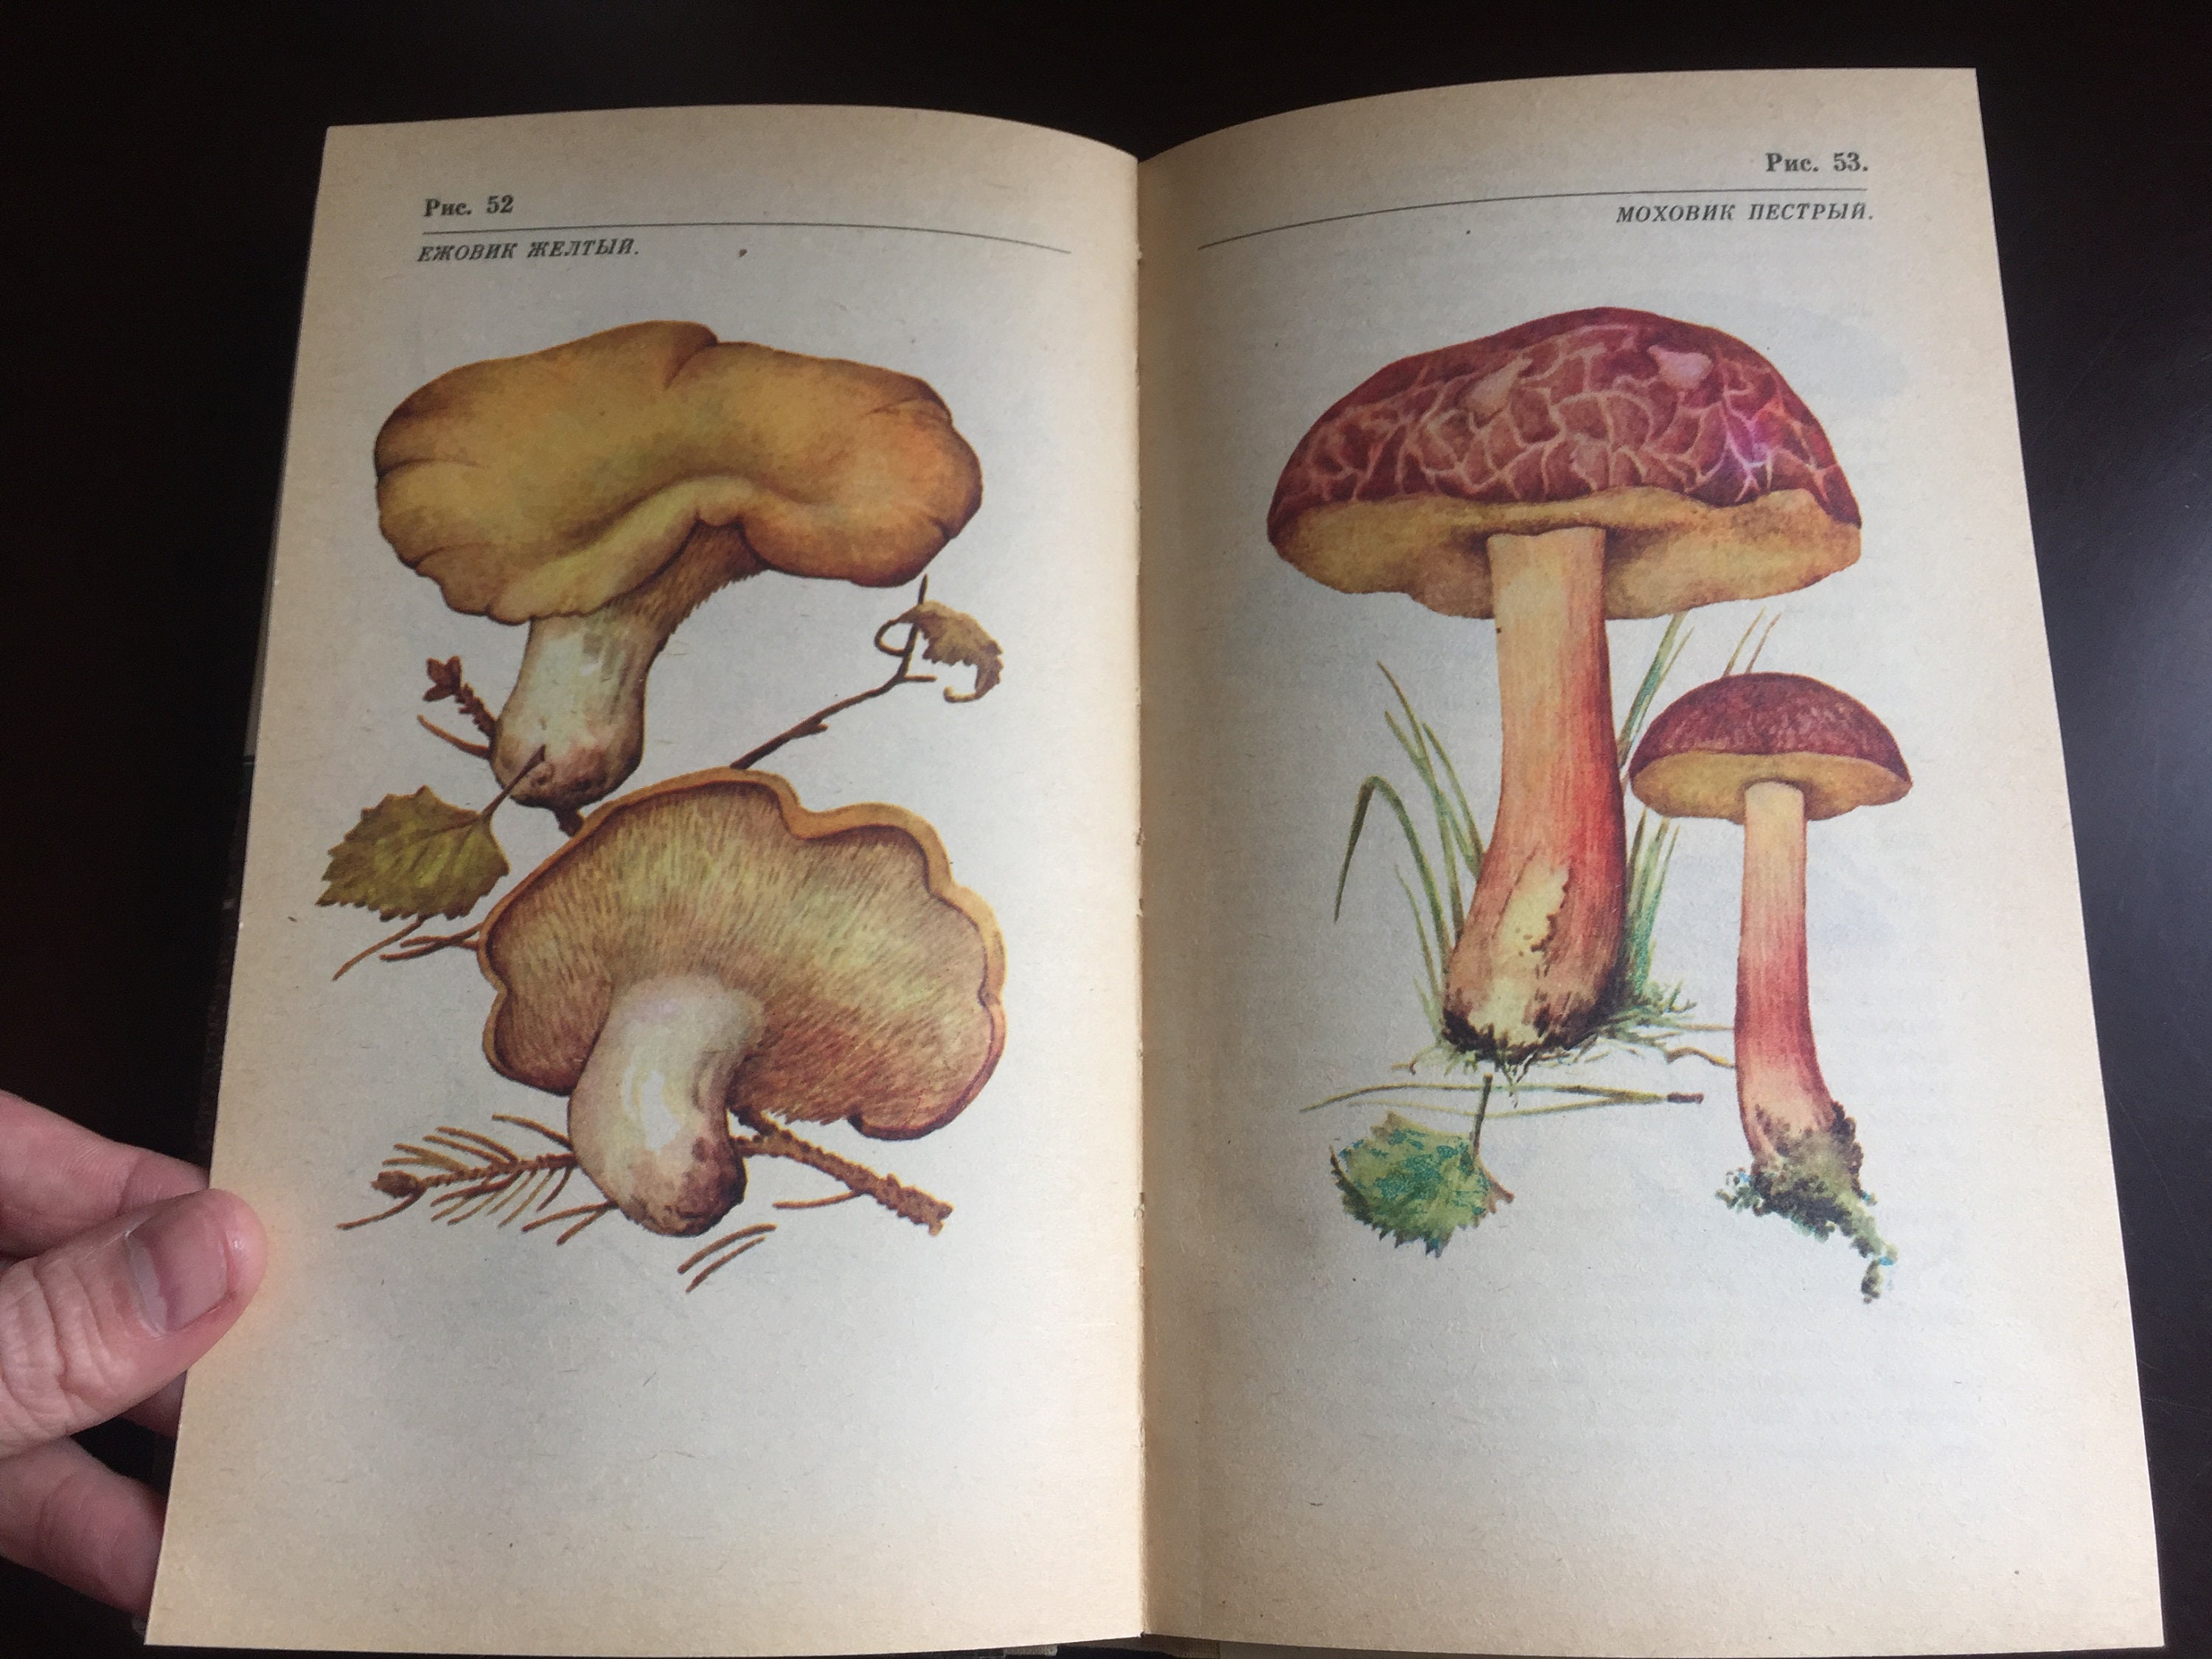 Mushroom Bookmark Printable Set 2, Mushroom Book Mark Printable, Vintage  Garden Ephemera, Vintage Mushroom Junk Journal